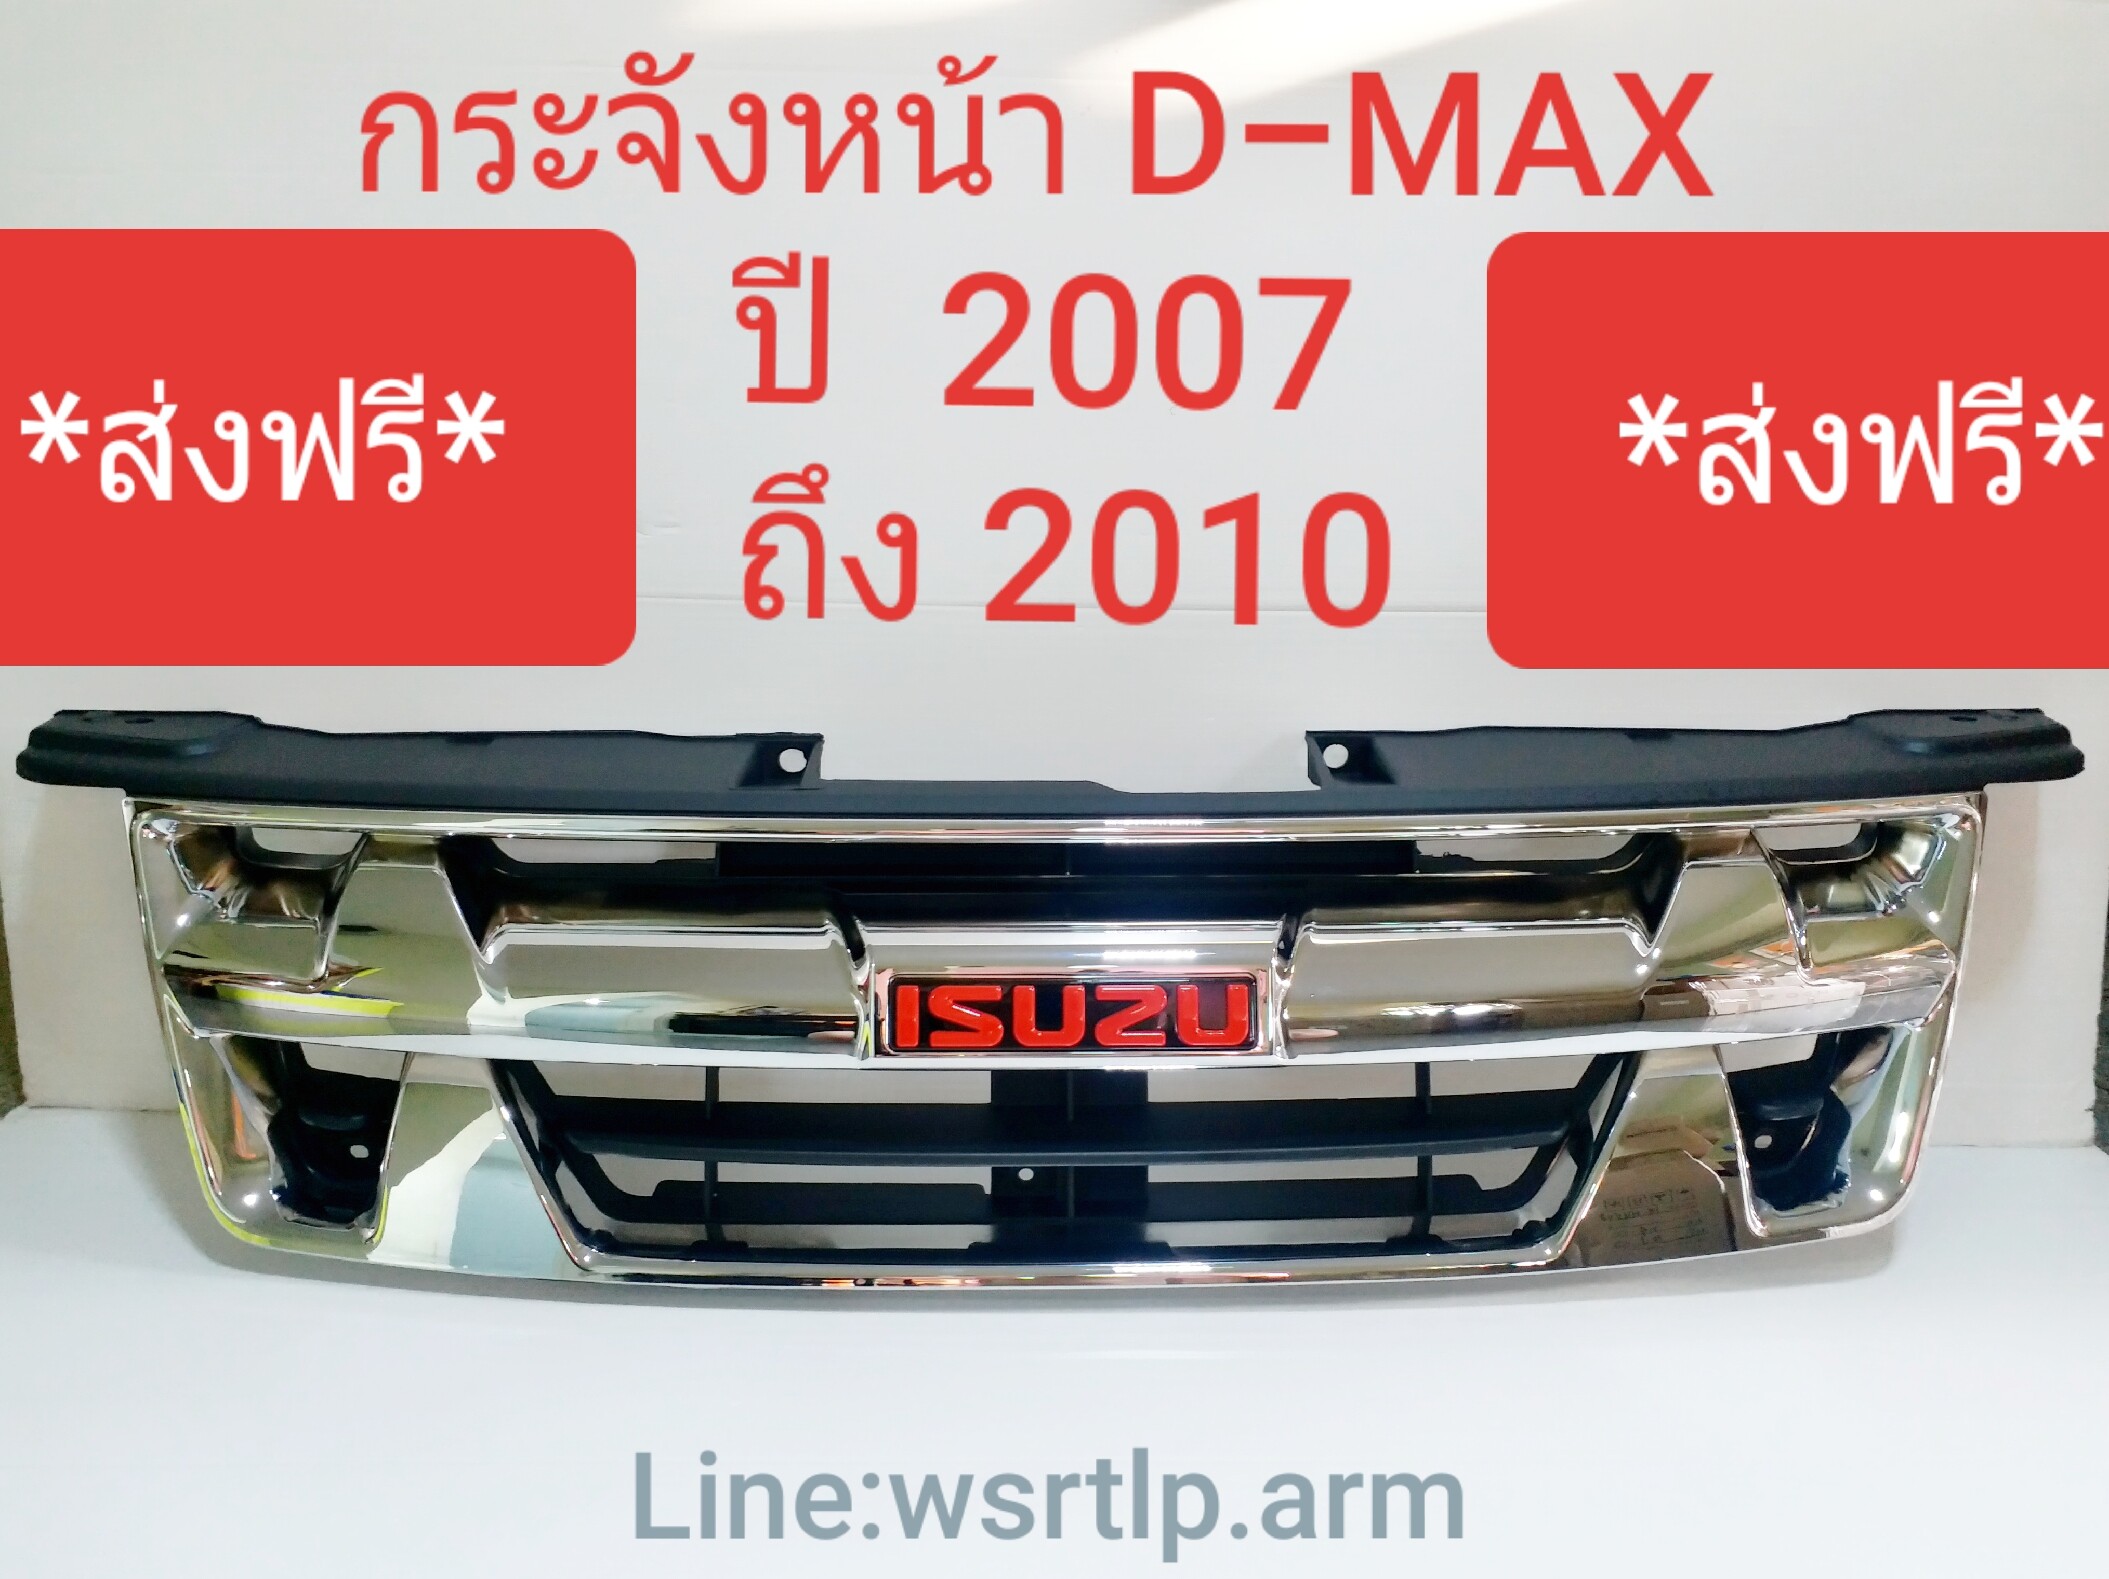 (ส่งฟรี!) กระจังหน้า D-MAX ดีแม็ก 2007 ถึง 2011  (พร้อมส่ง)  แพลทตินั่ม โกลซีรี่ งานคัดทุกอัน สีชุบโครเมี่ยมพร้อมโลโก้แดง โฉมก่อนเป็นออนิล